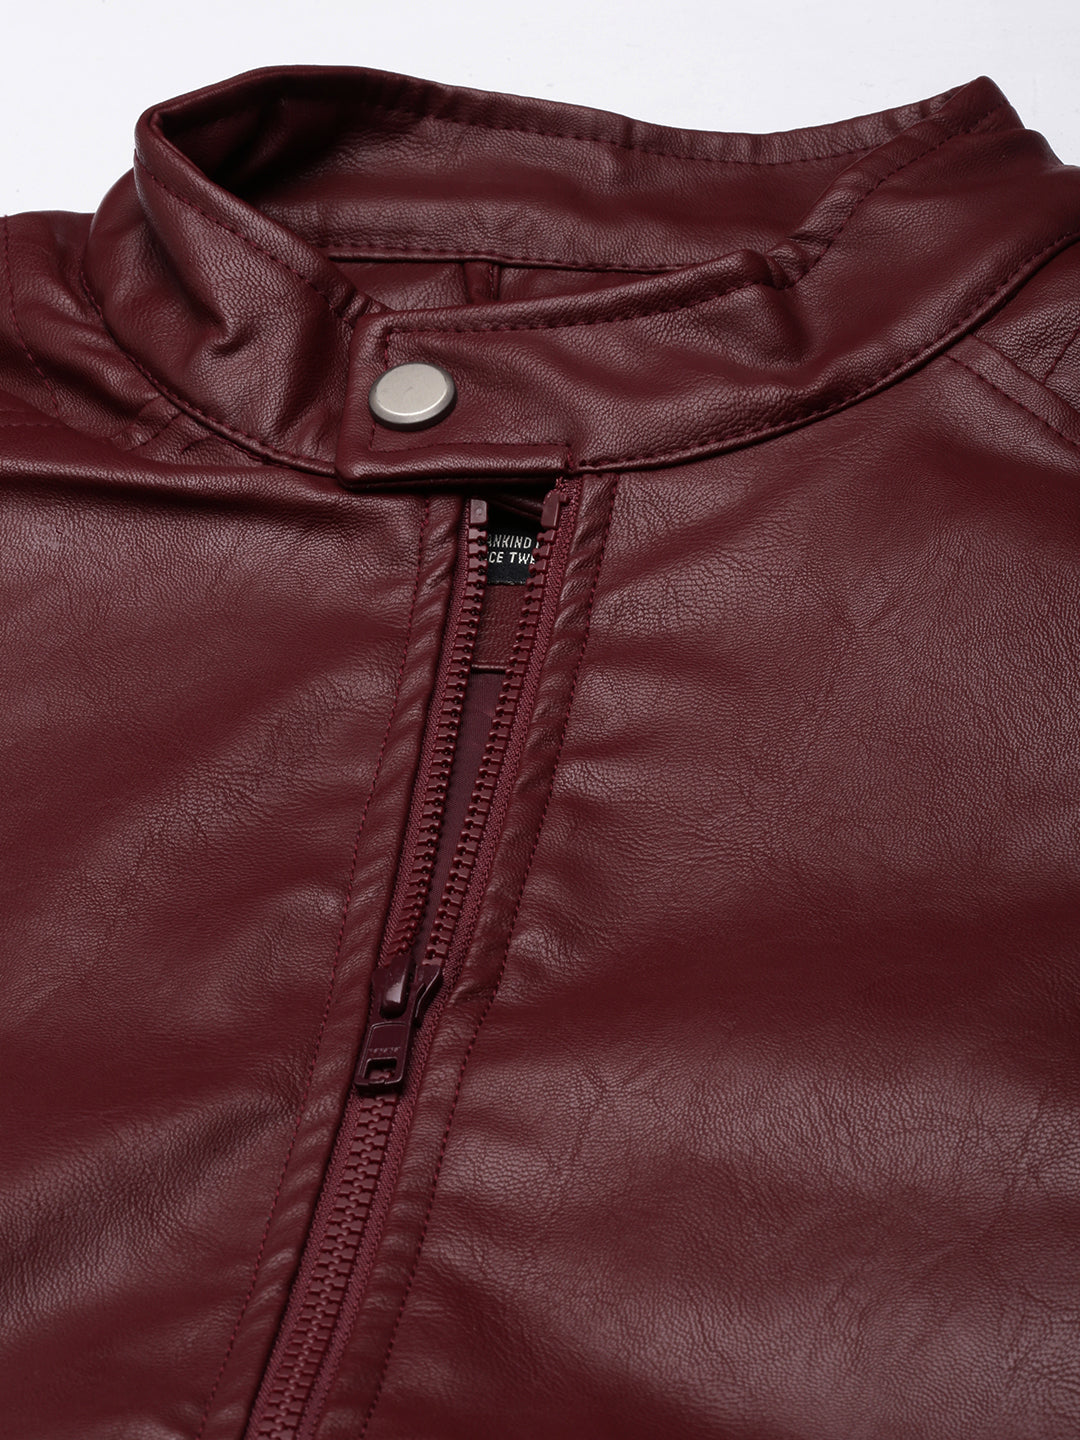 Ruggged Elegance Leather Jacket